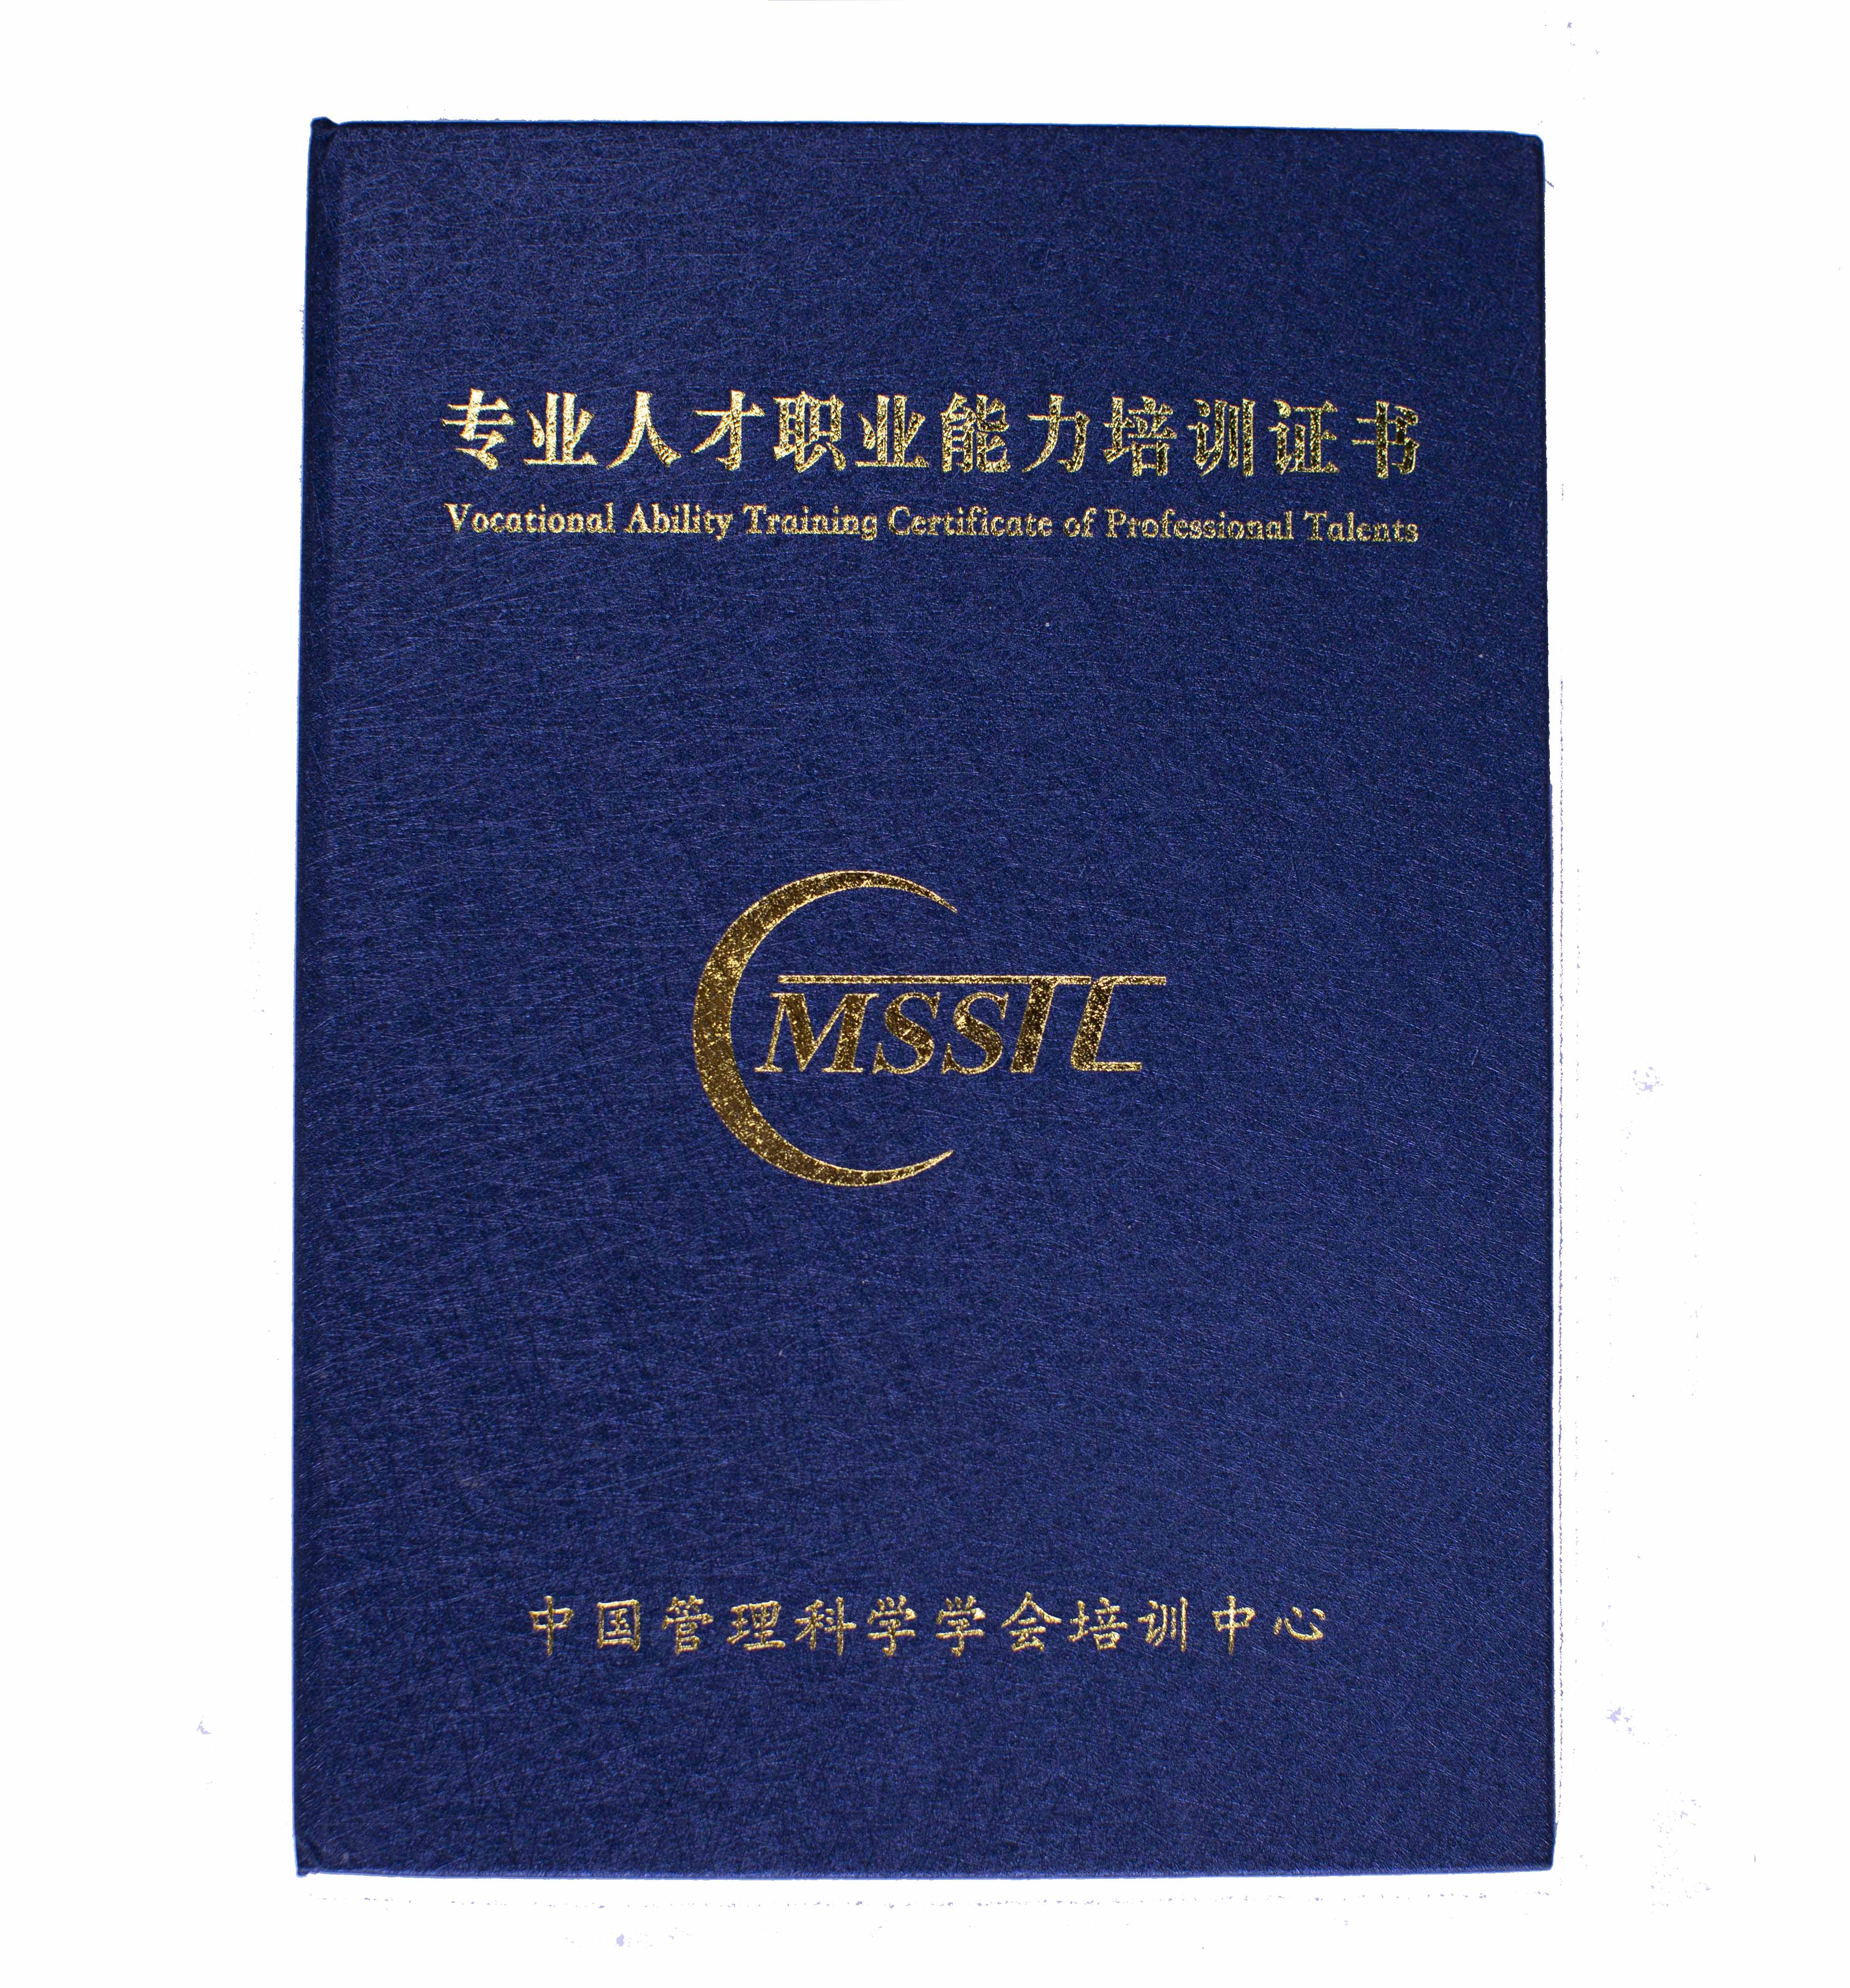 证书,由中国管理科学学会培训中心颁发的cmc沙盘咨询师职业能力证书为